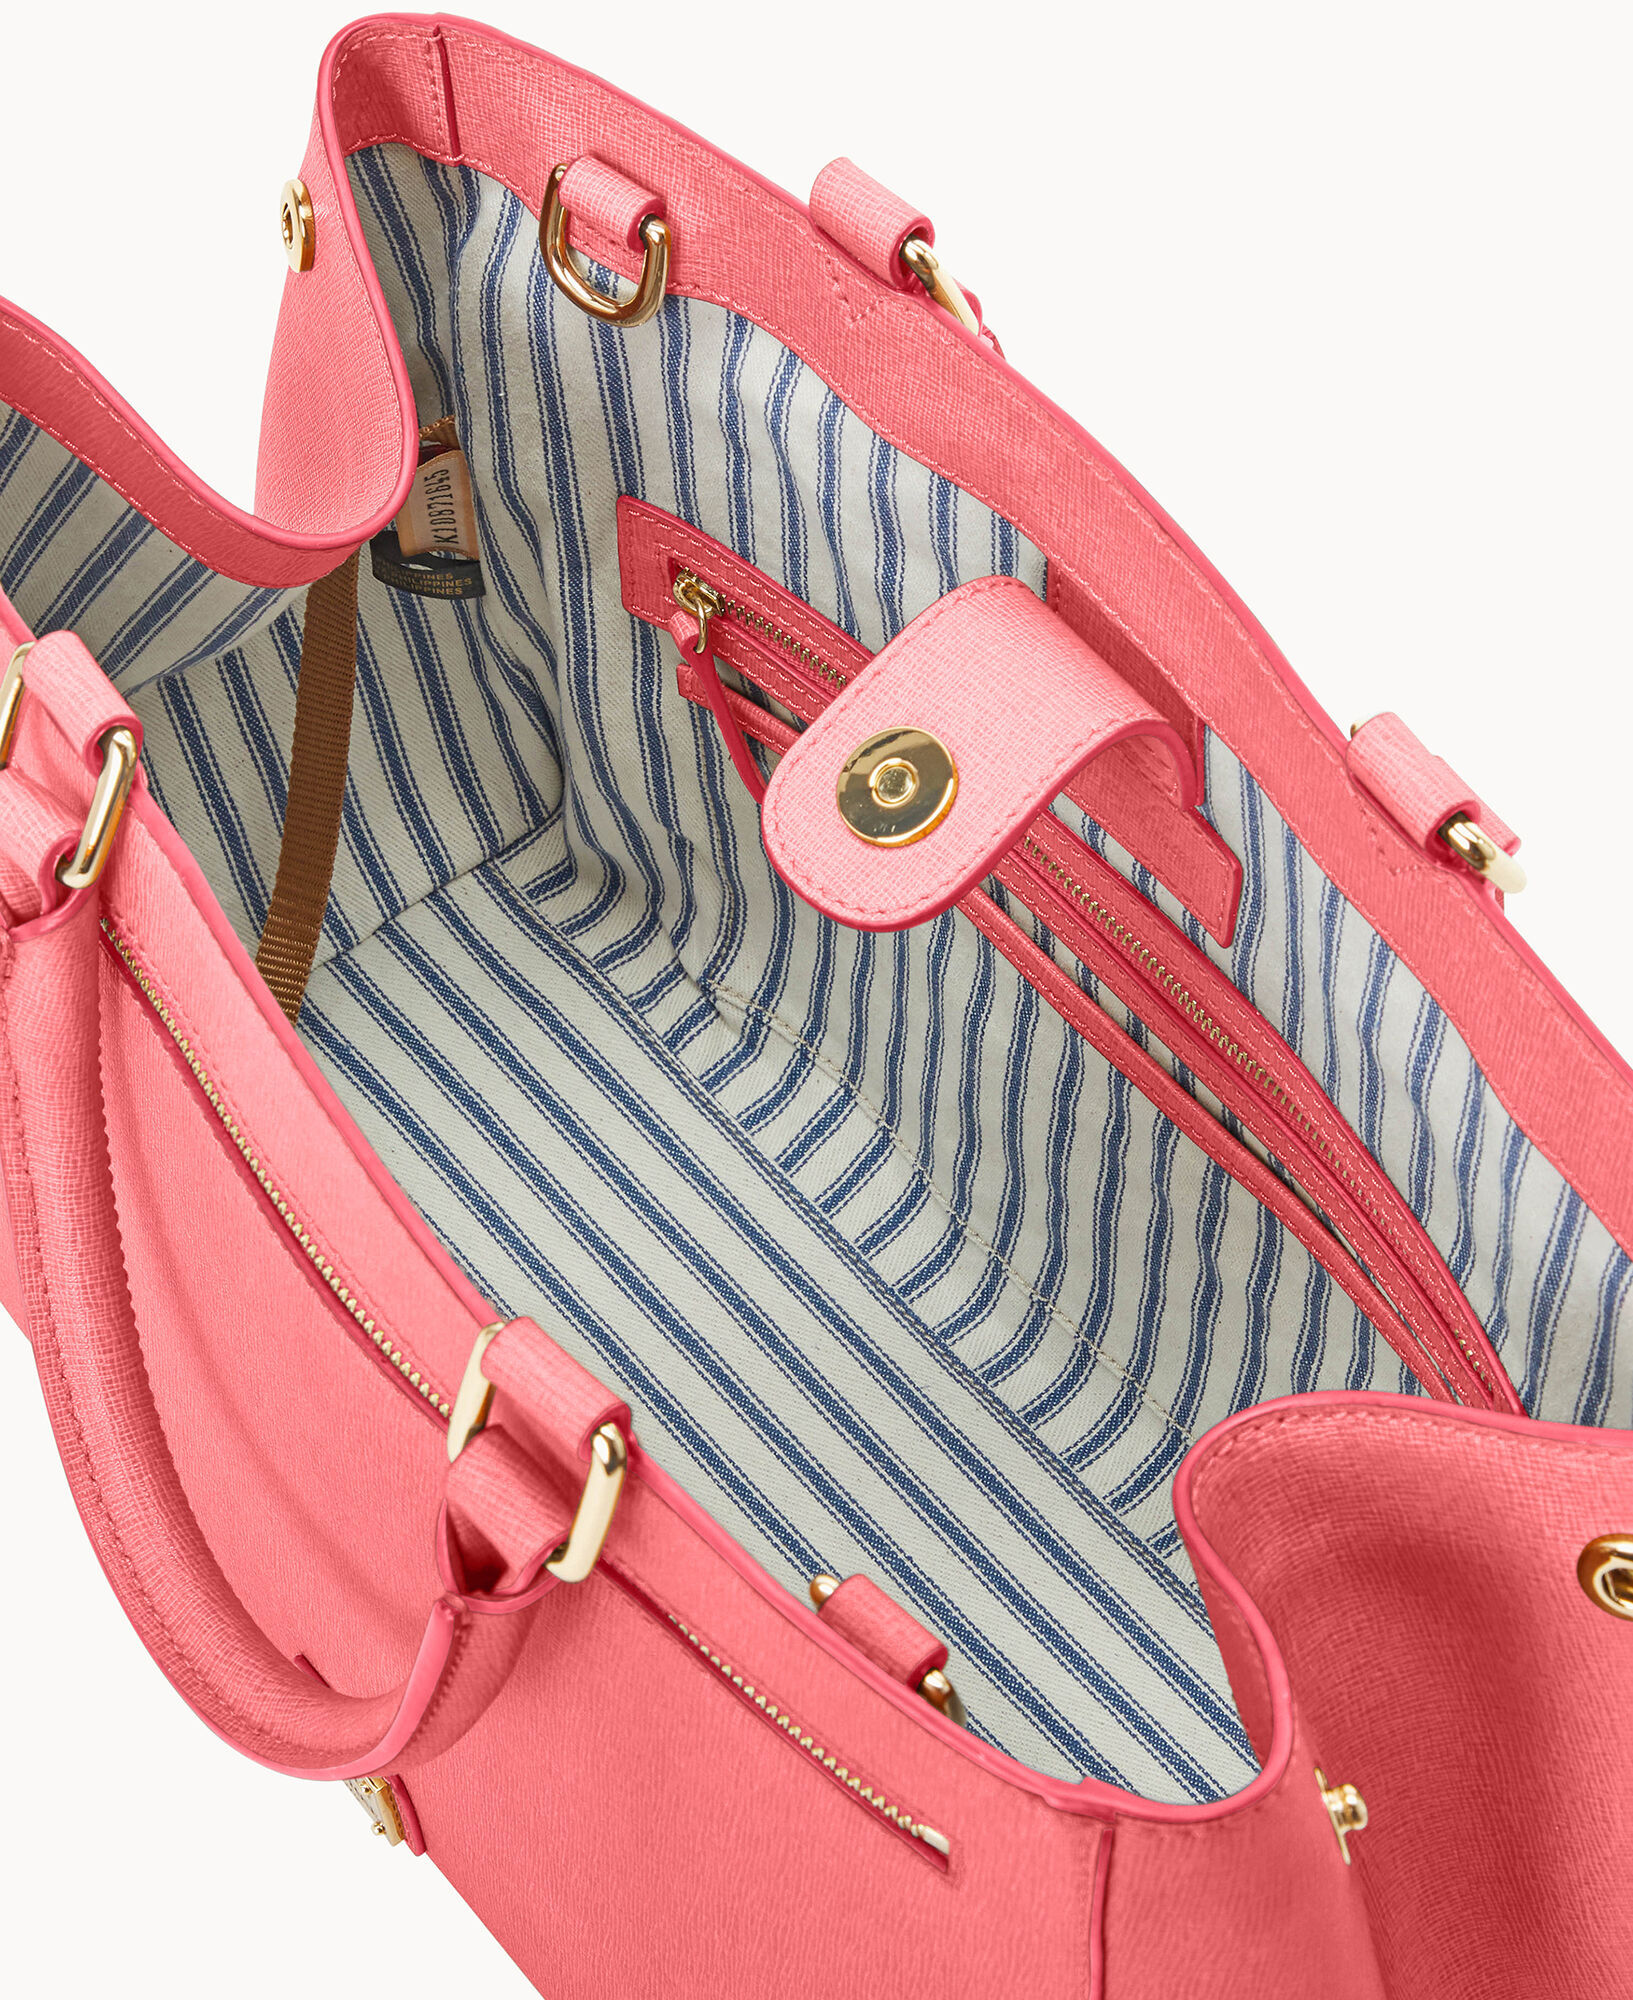 Dooney & Bourke Saffiano Domed Zip Satchel (Coral) Handbags - ShopStyle